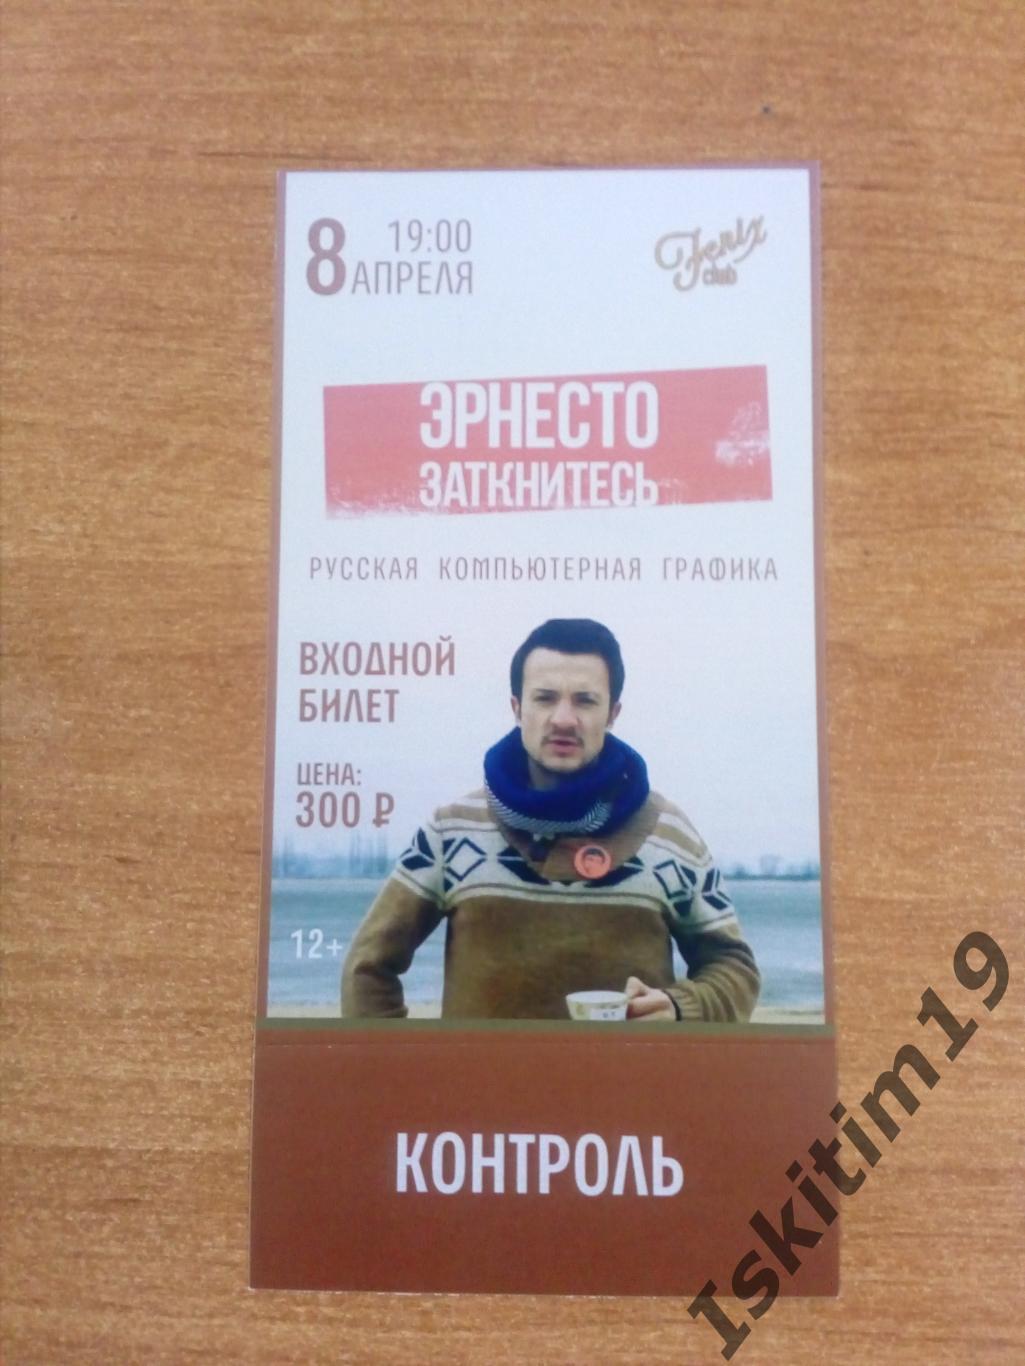 Билет (с контролем) на концерт Эрнесто Заткнитесь 08.04.2015 Новосибирск